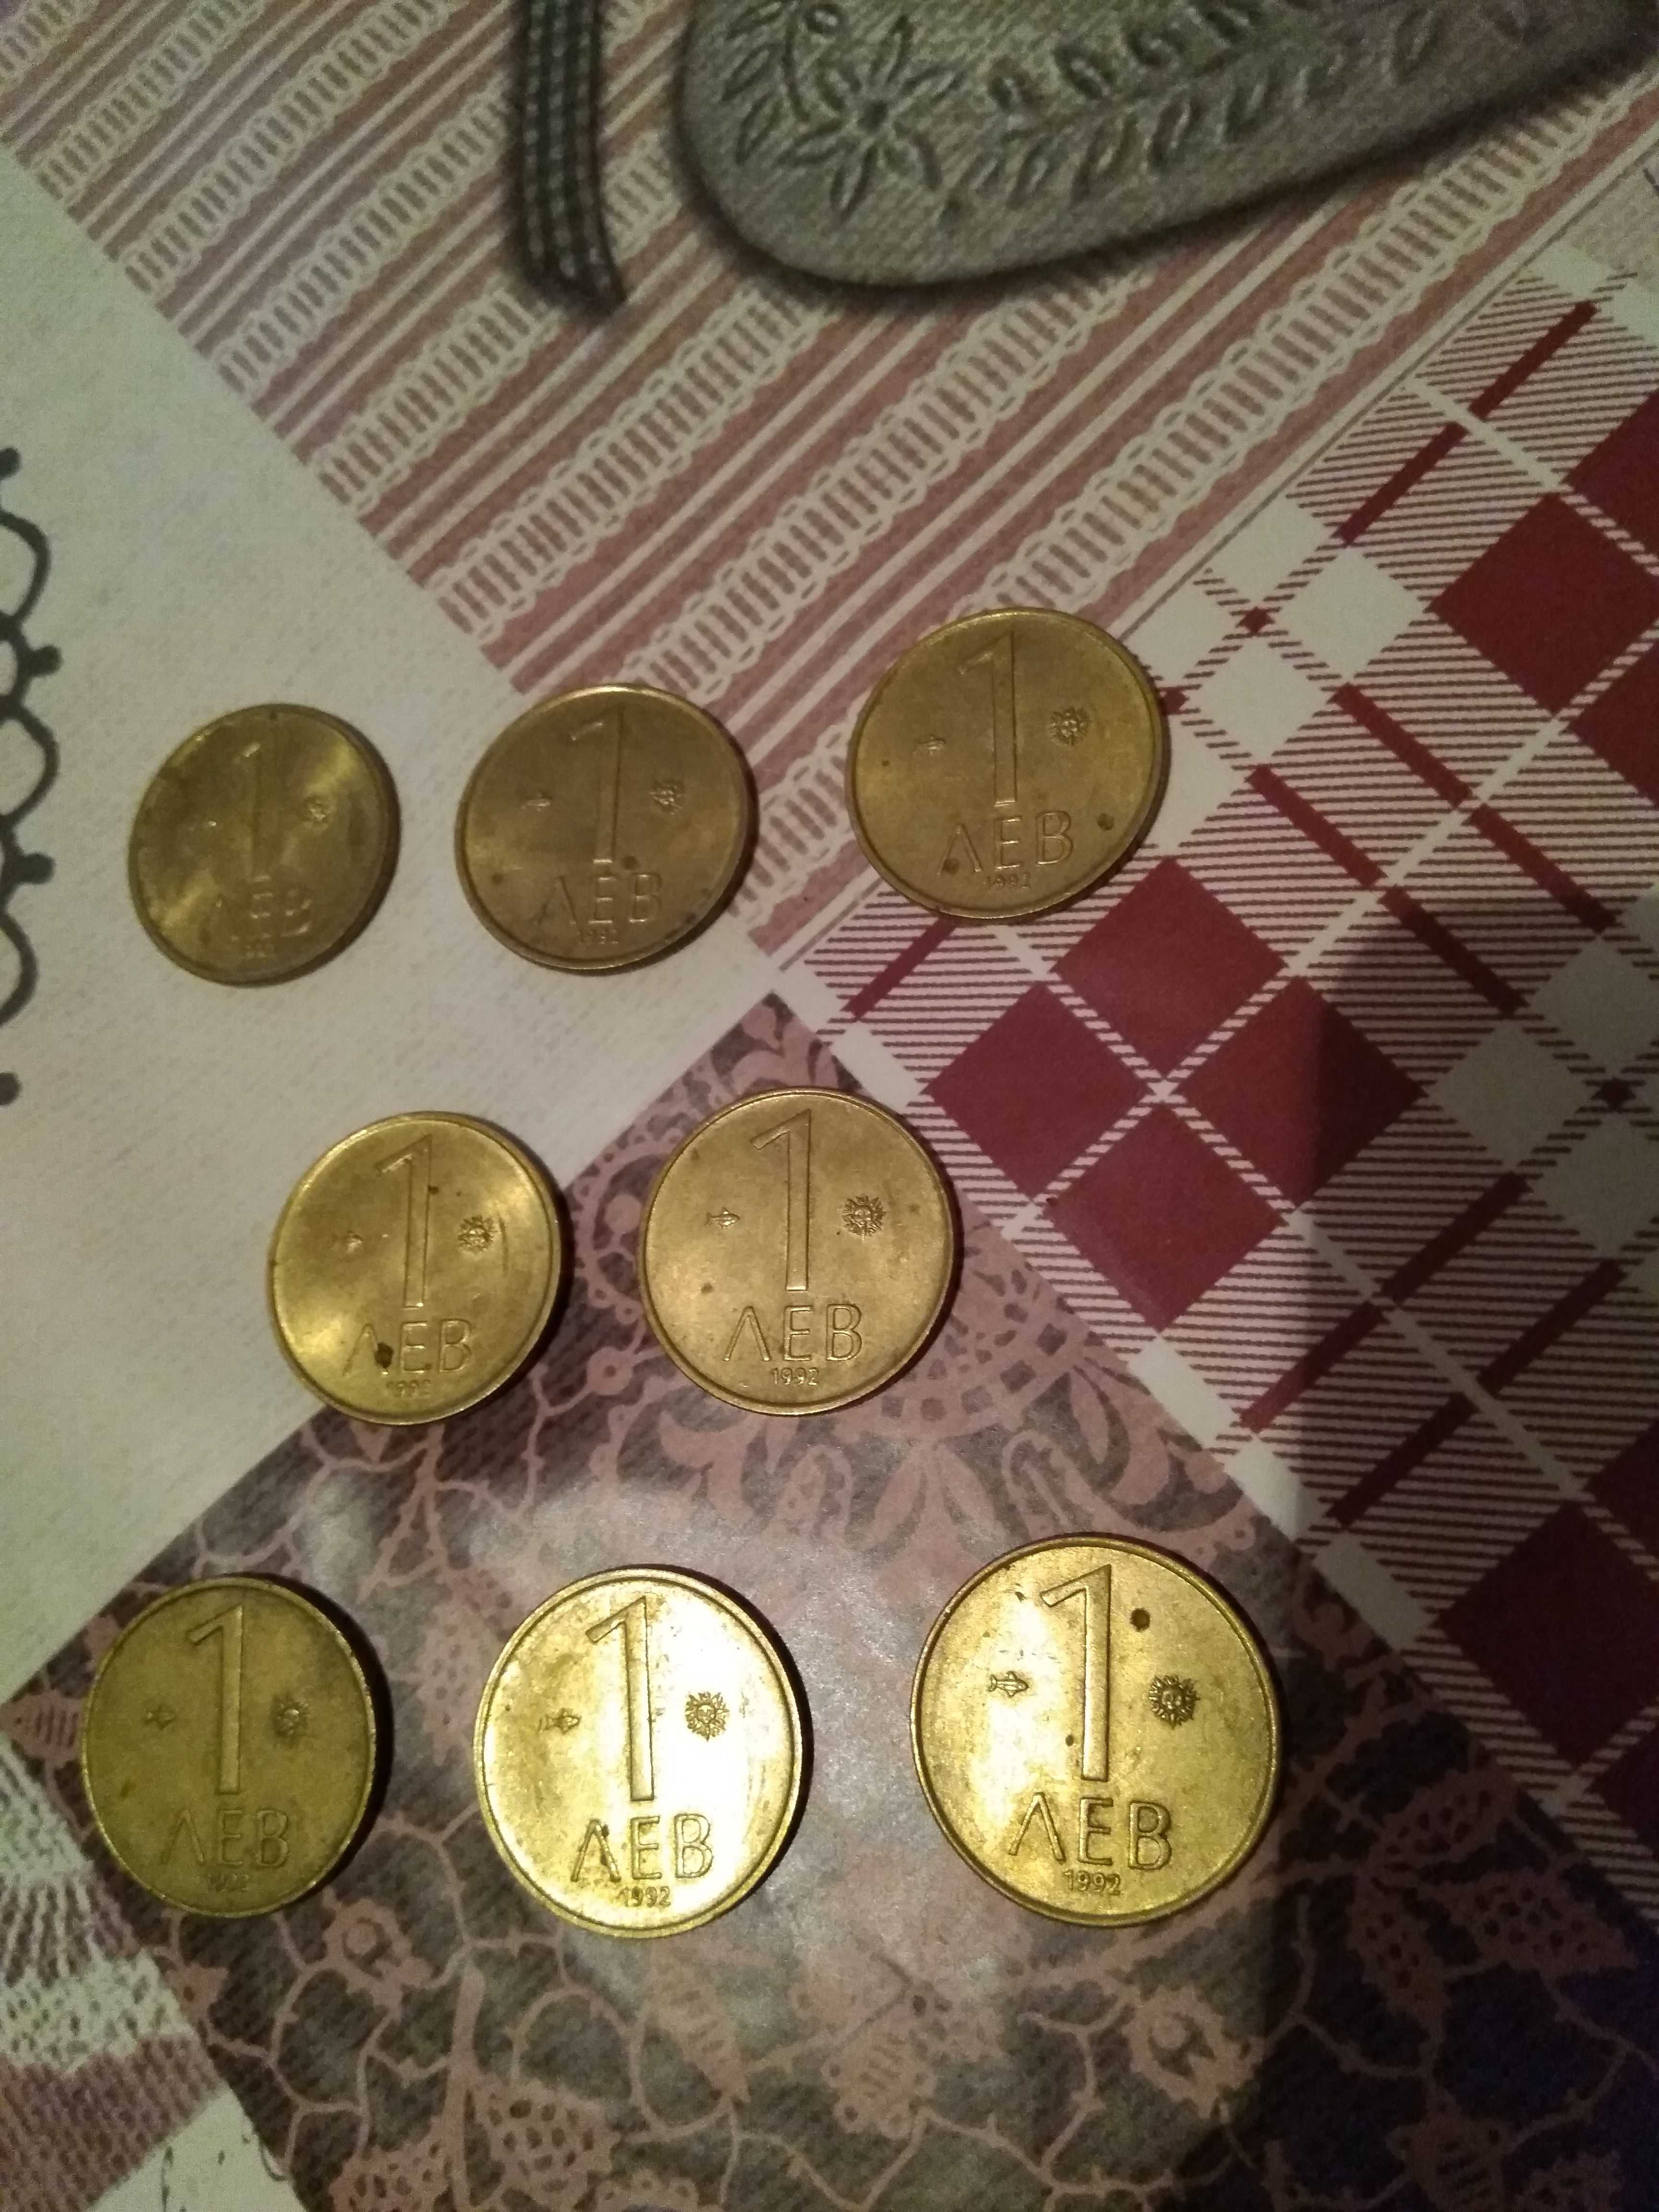 Български монети от 1 лев от 1992 г